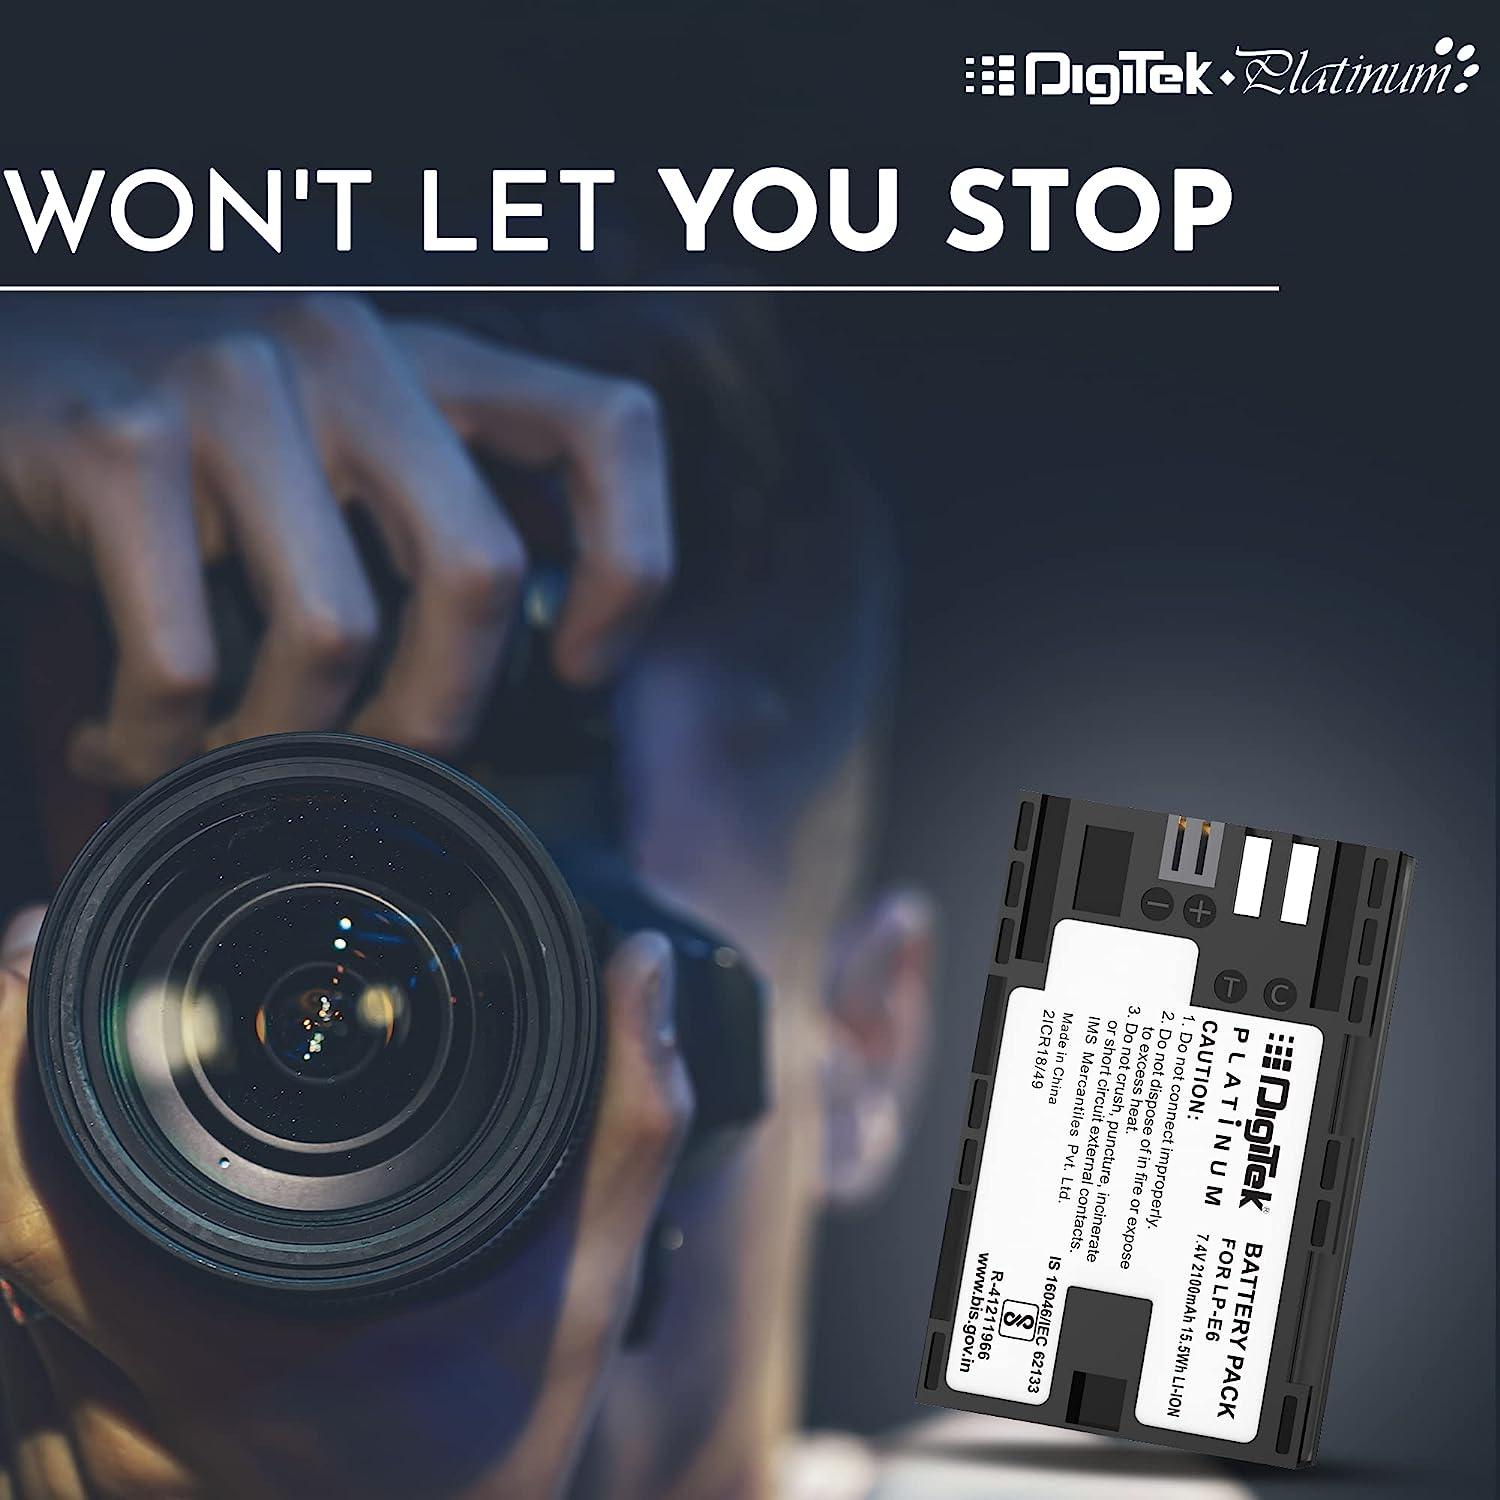 Digitek (LP-E6 Platinum) 2100mAh Rechargeable Lithium-ion Battery for Canon DSLR Camera | Compatibility - EOS SD Mark III, Mark II, EOS 7D, EOS 6D, 60D, 70D - Digitek